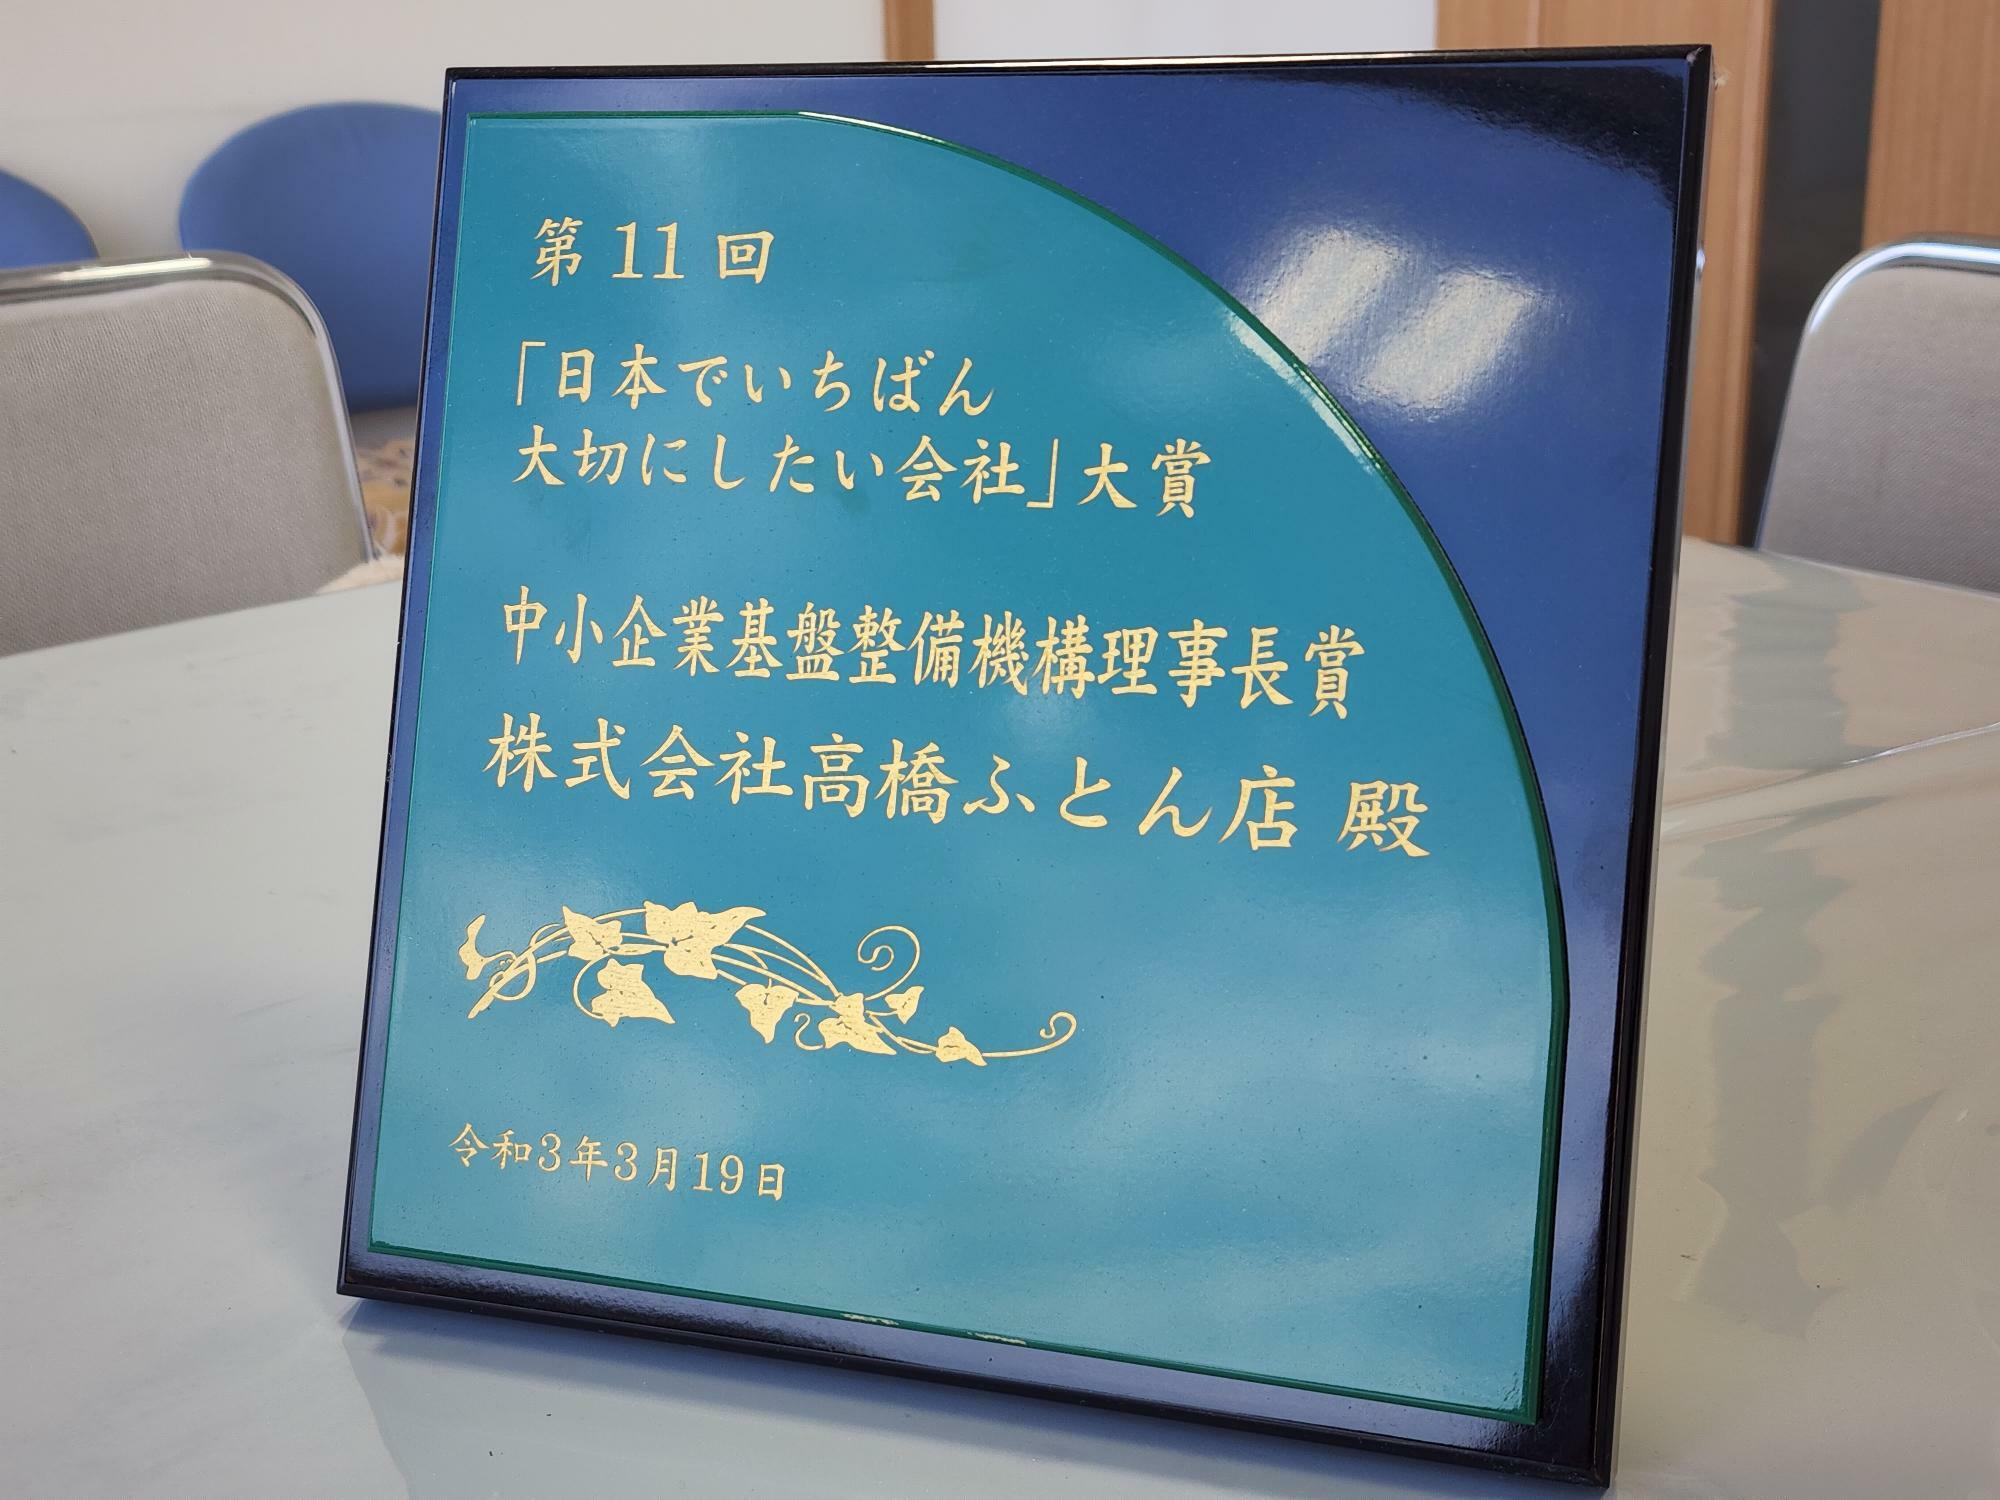 「株式会社 高橋ふとん店」が2021年に受賞した「日本でいちばん大切にしたい会社大賞」。